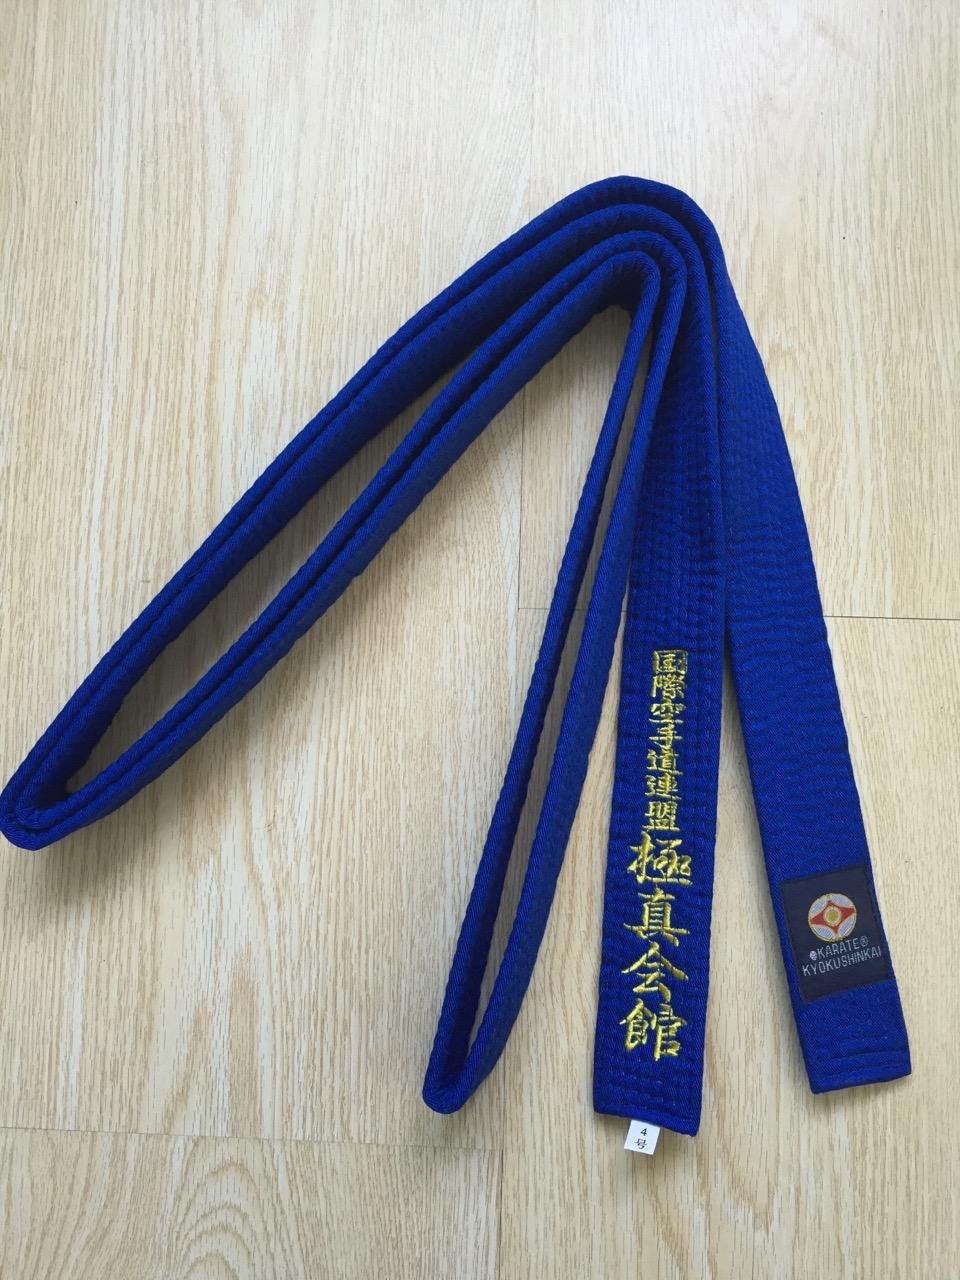 Kyokushin Karate color belt 3